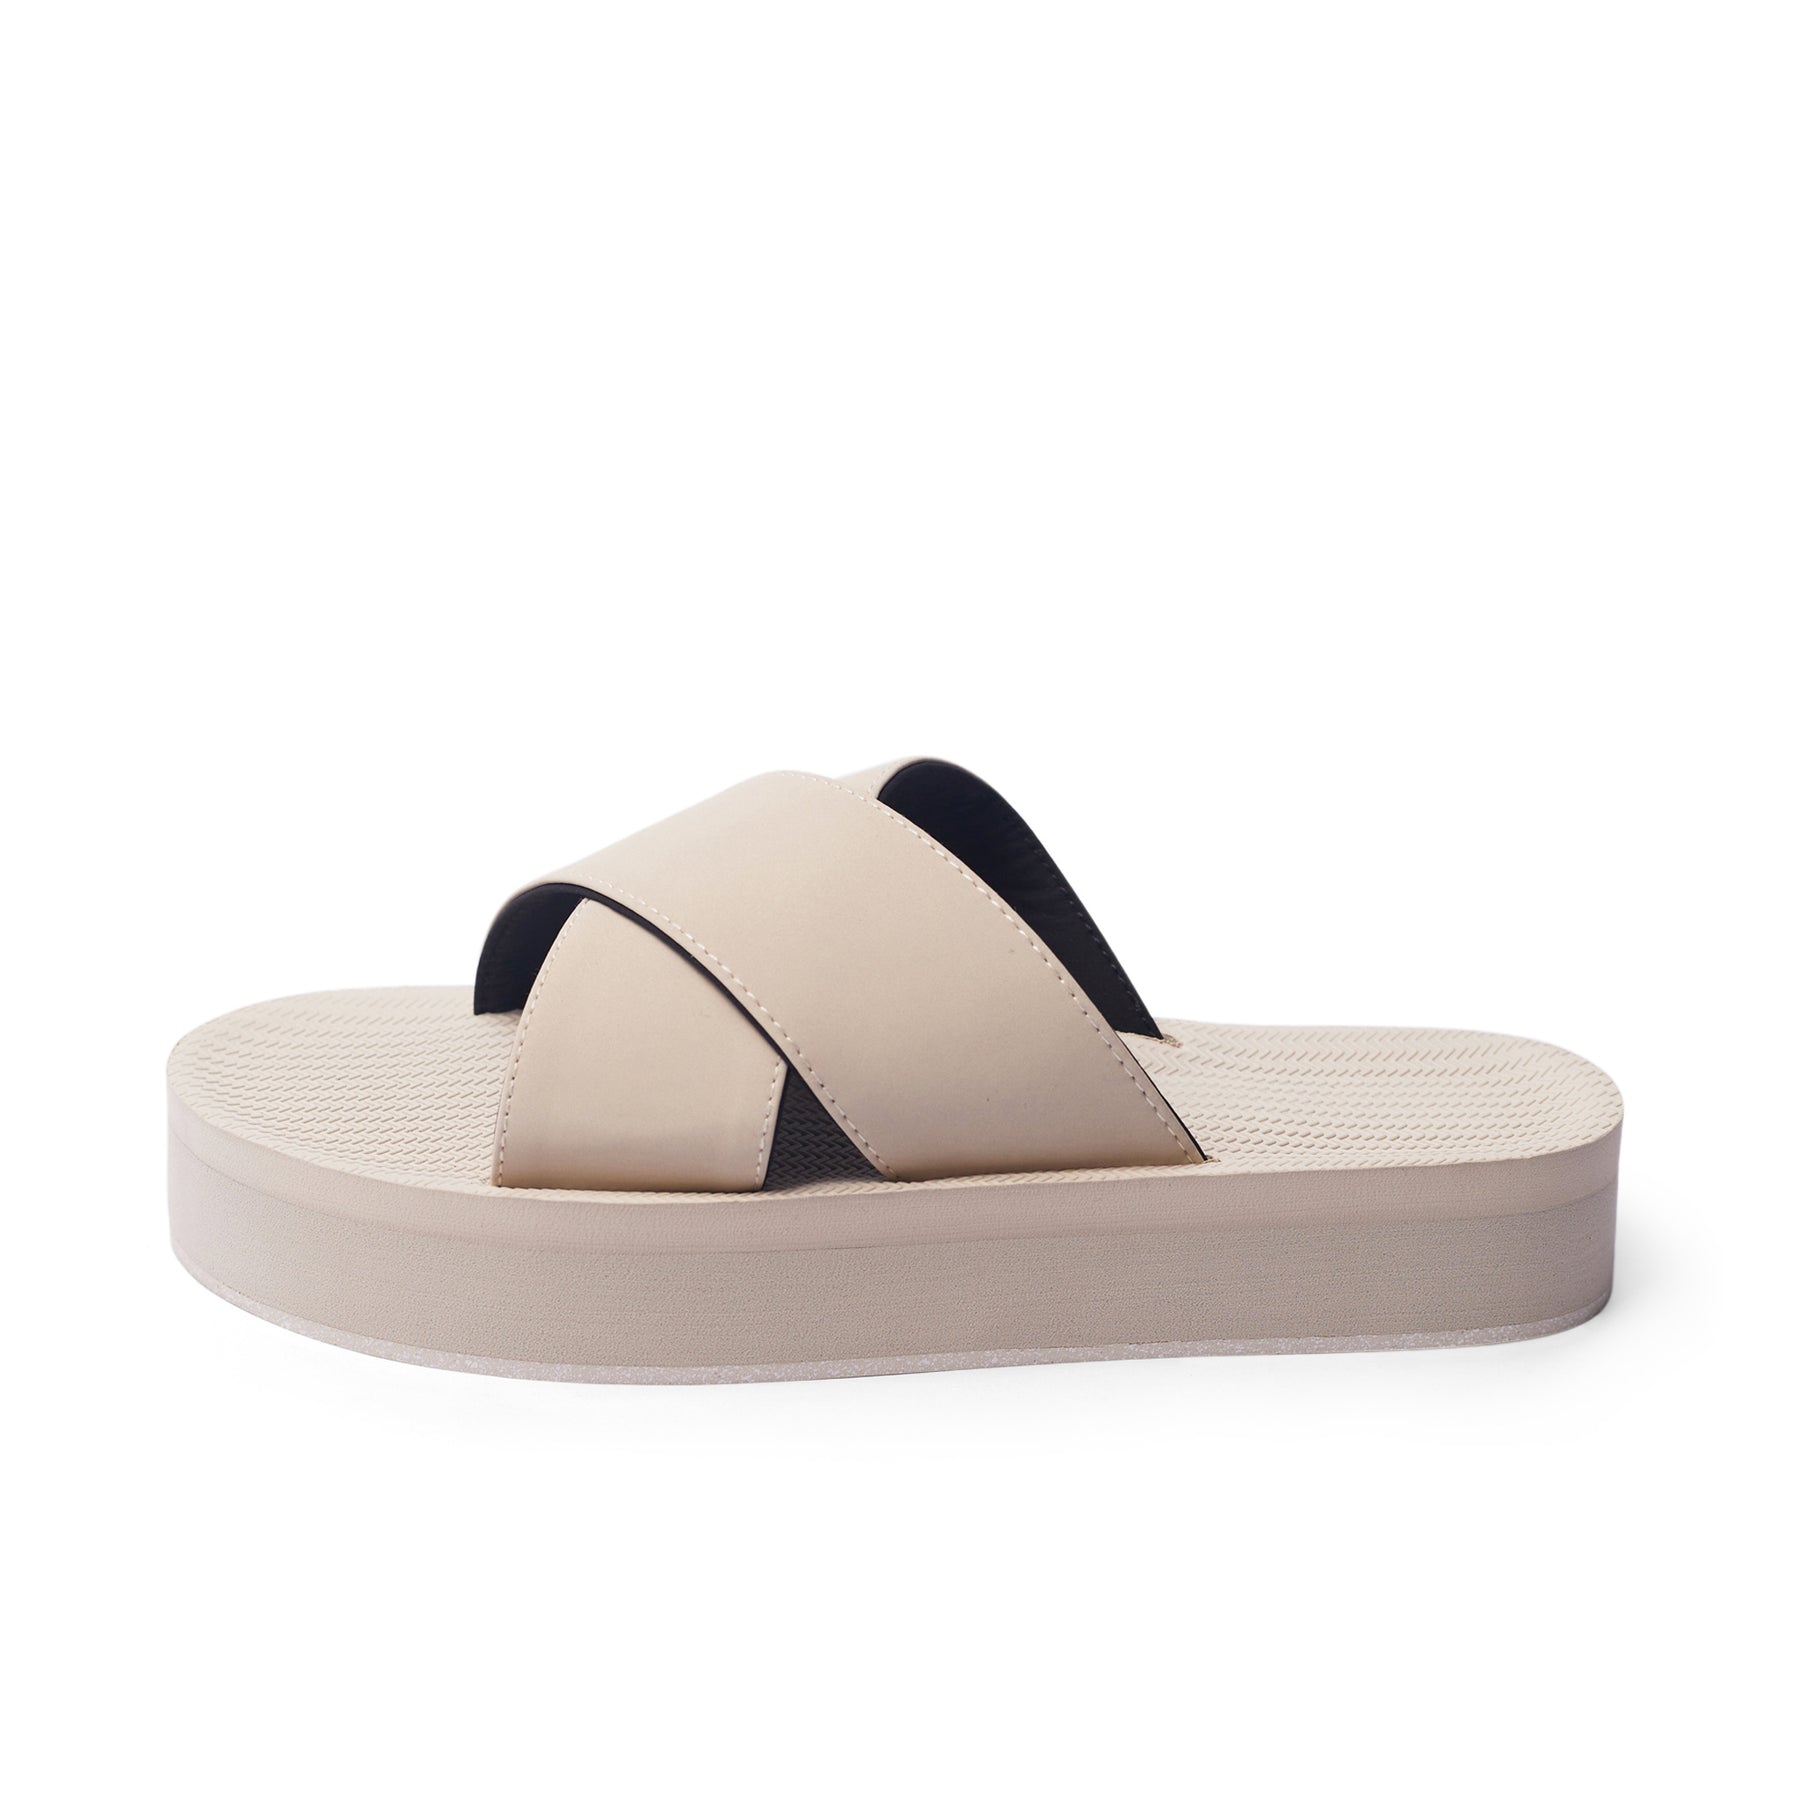 Women’s Cross Sandals Sneaker Sole - Sea Salt Sole/Sea Salt Colorway